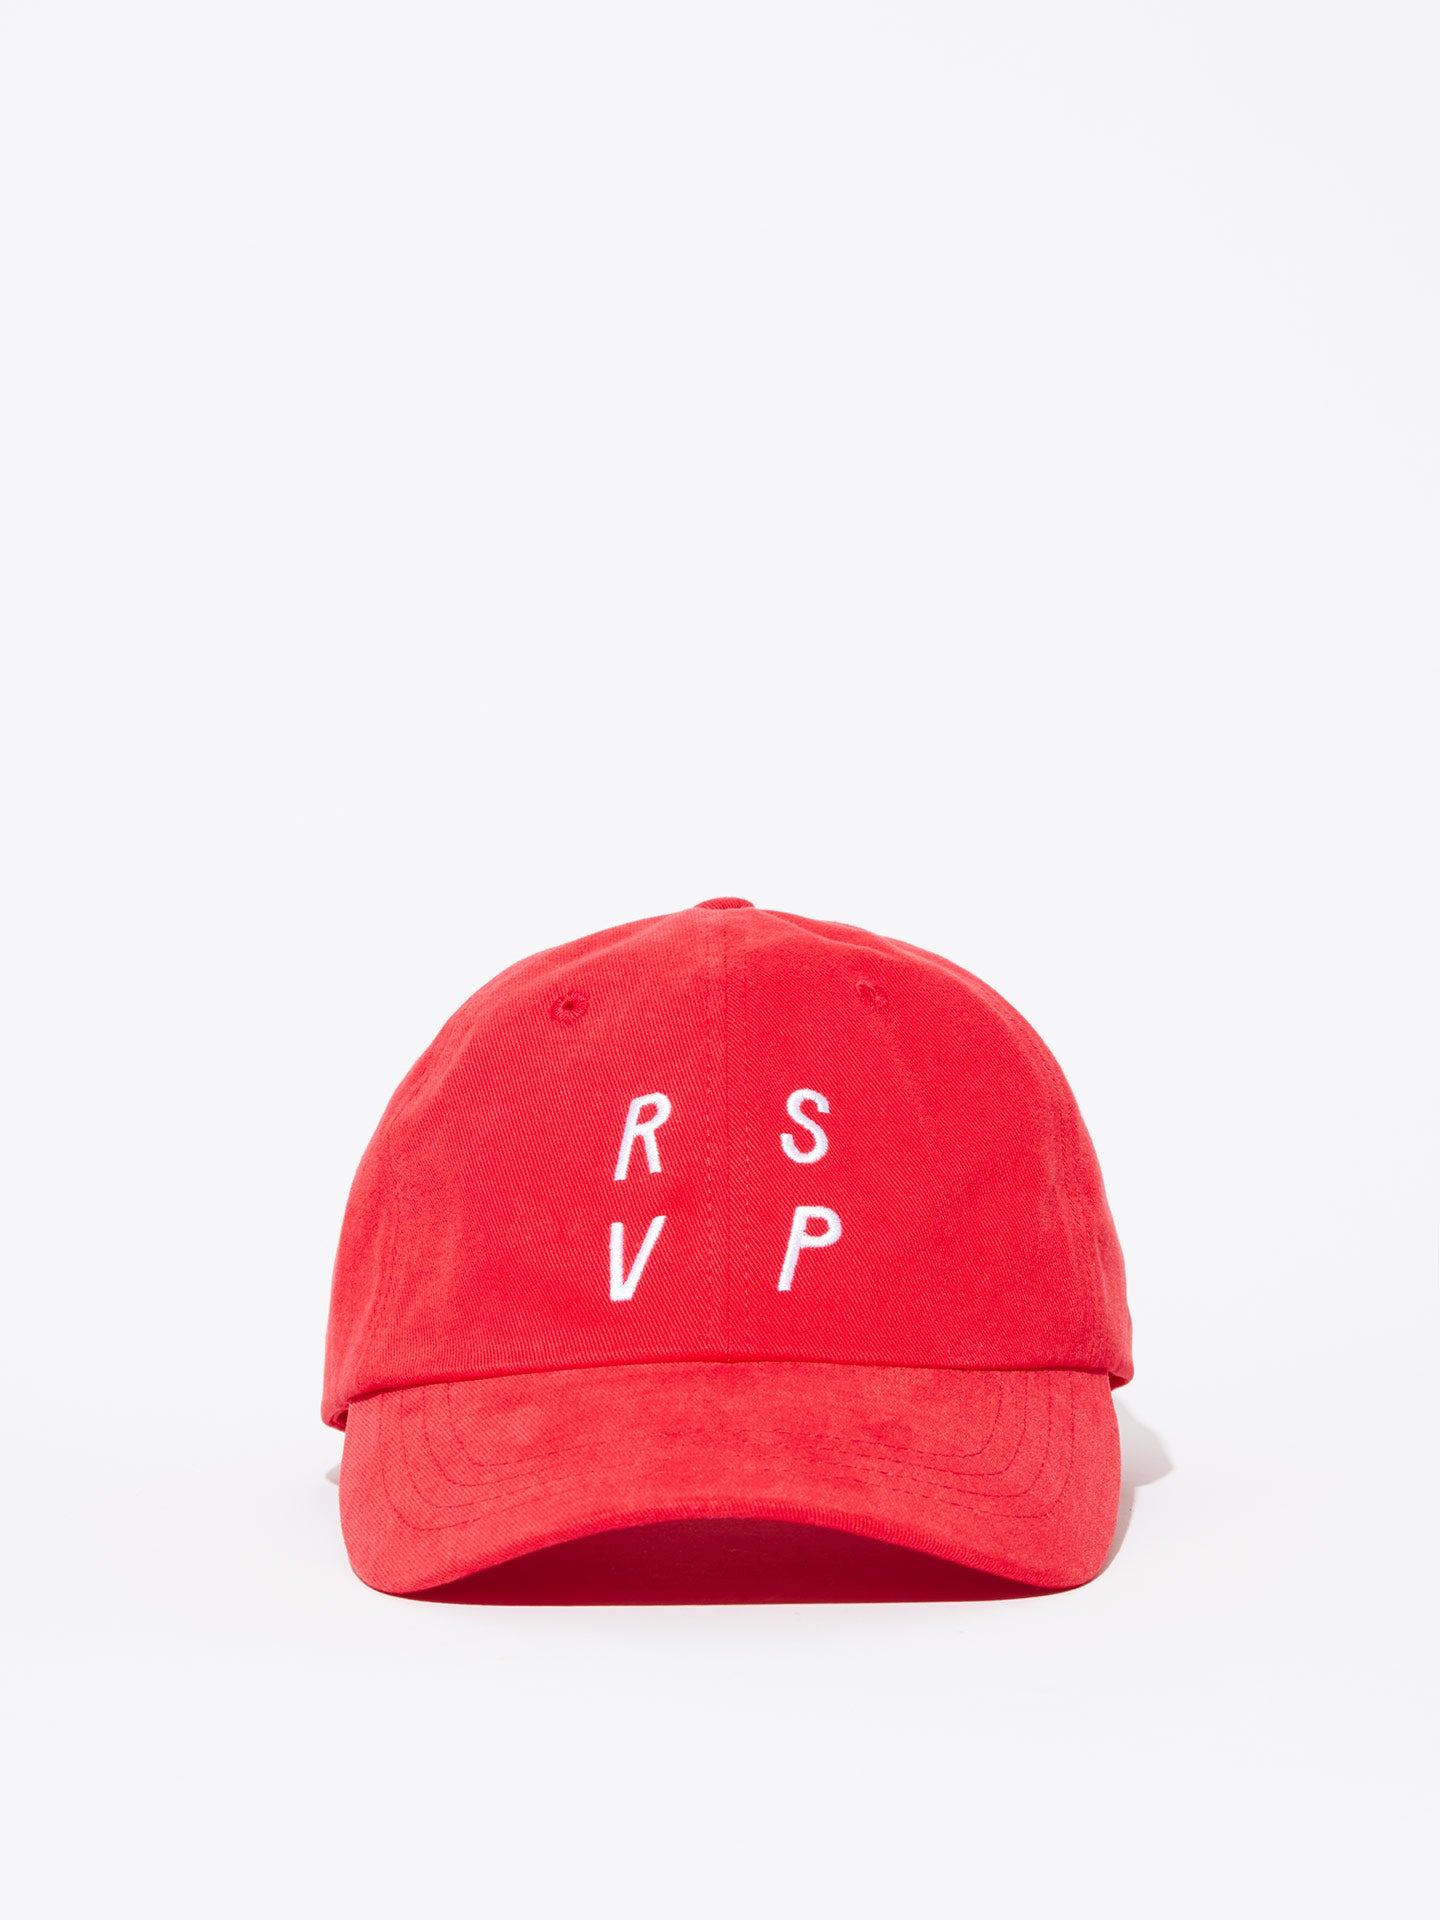 CAP RED